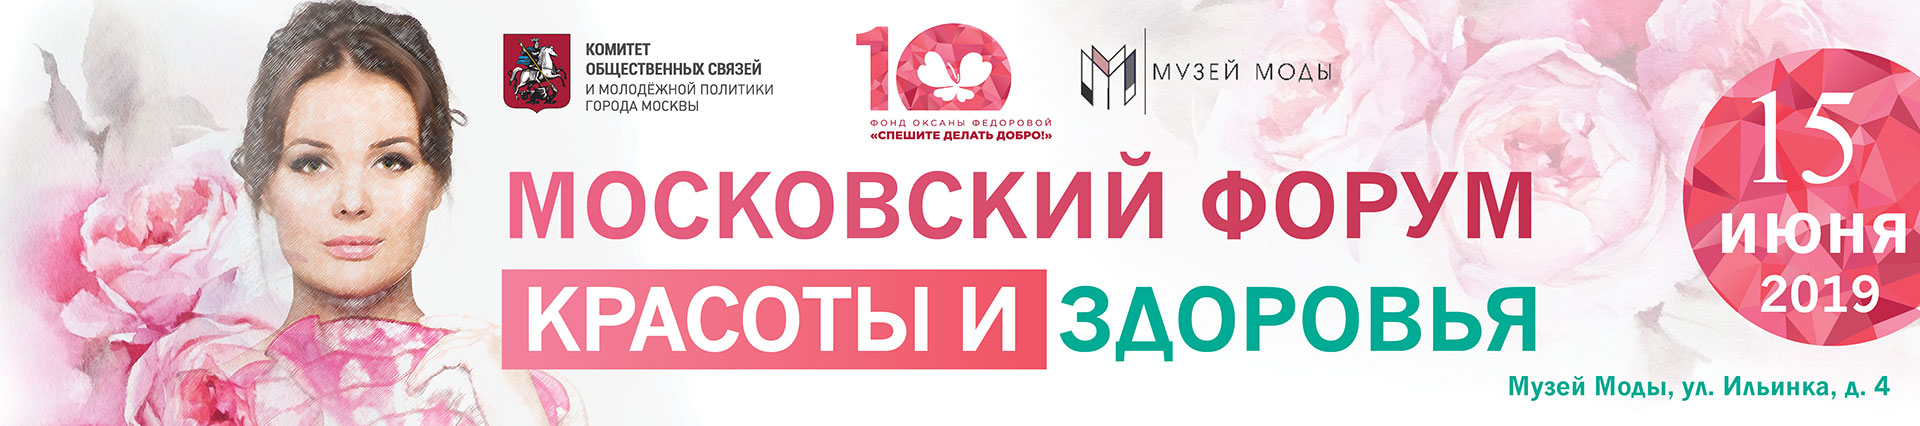 Московский Форум красоты и здоровья